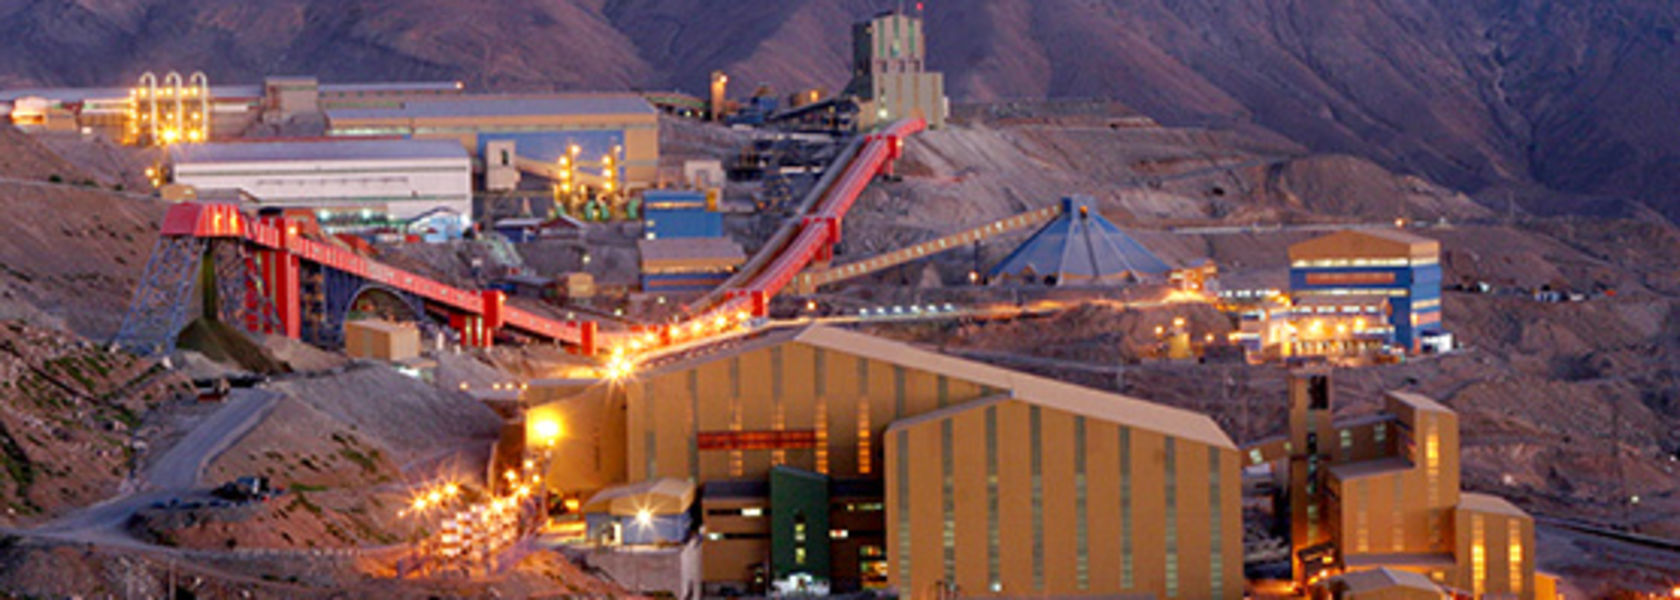 США аннулировали лицензии Antofagasta на два участка медно-никелевого месторождения